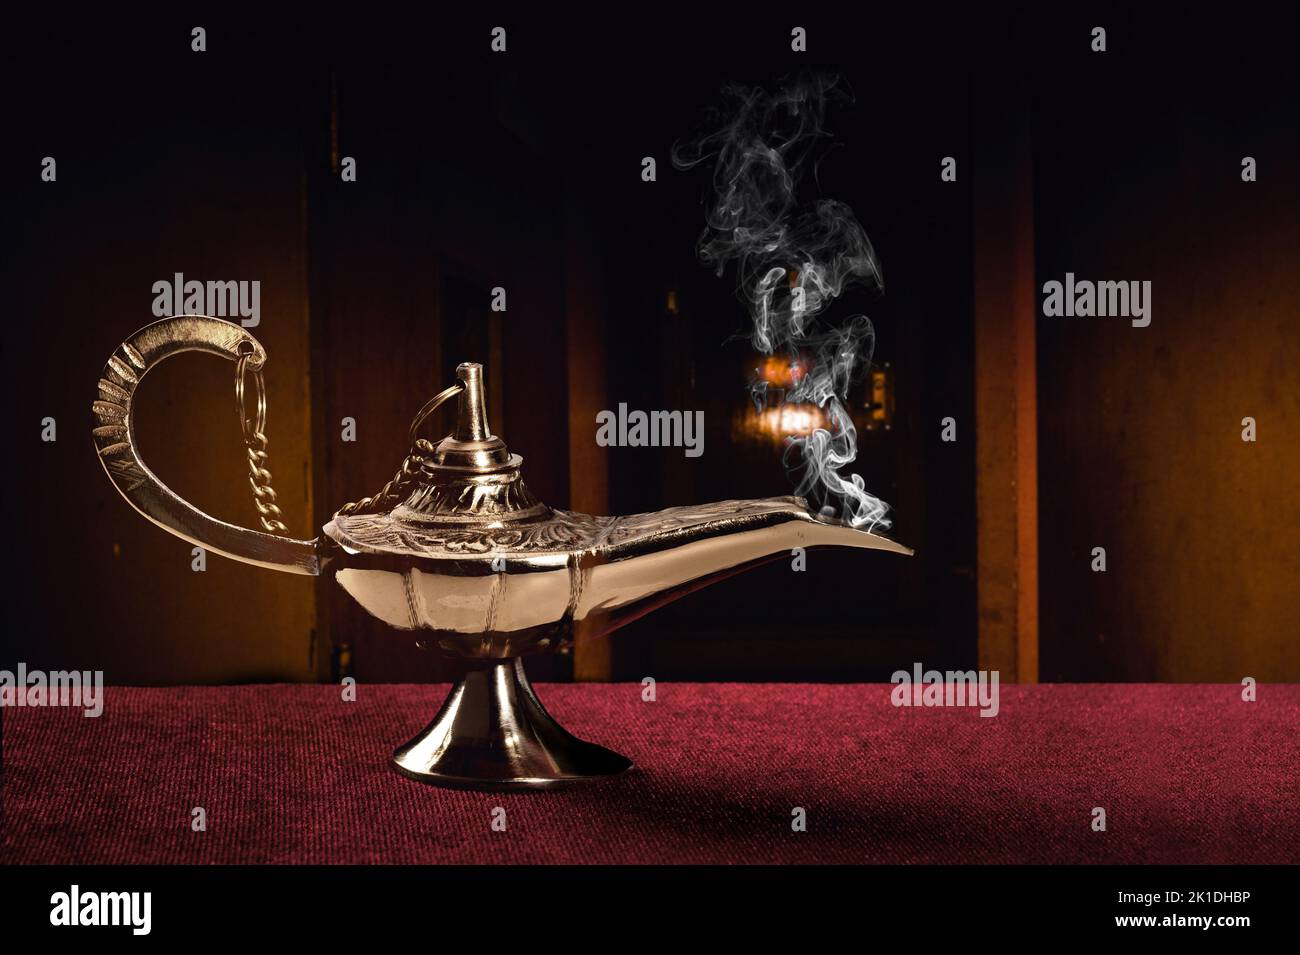 Une magie ancienne lampe sur un tableau de feutre rouge haut disperse un flot de fumée mystérieux. Banque D'Images